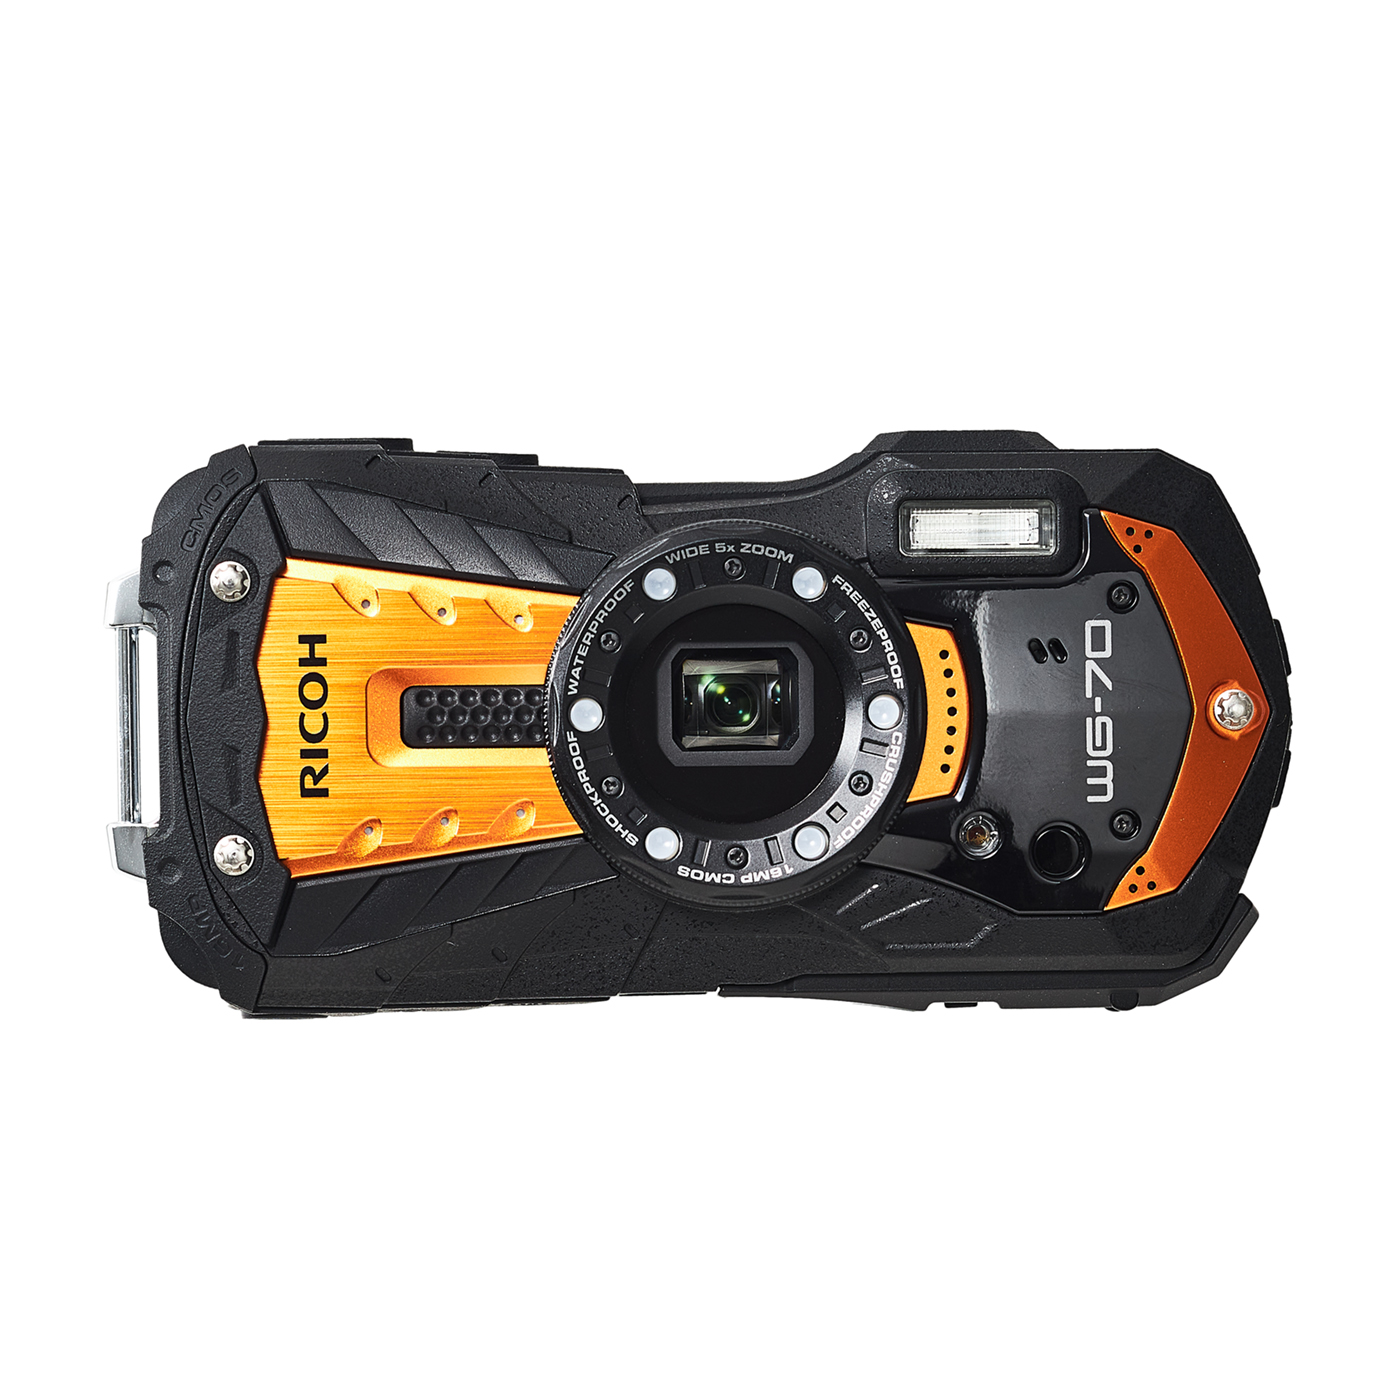 ROCOH リコー防水デジタルカメラ WG-70 オレンジ WG-70OR